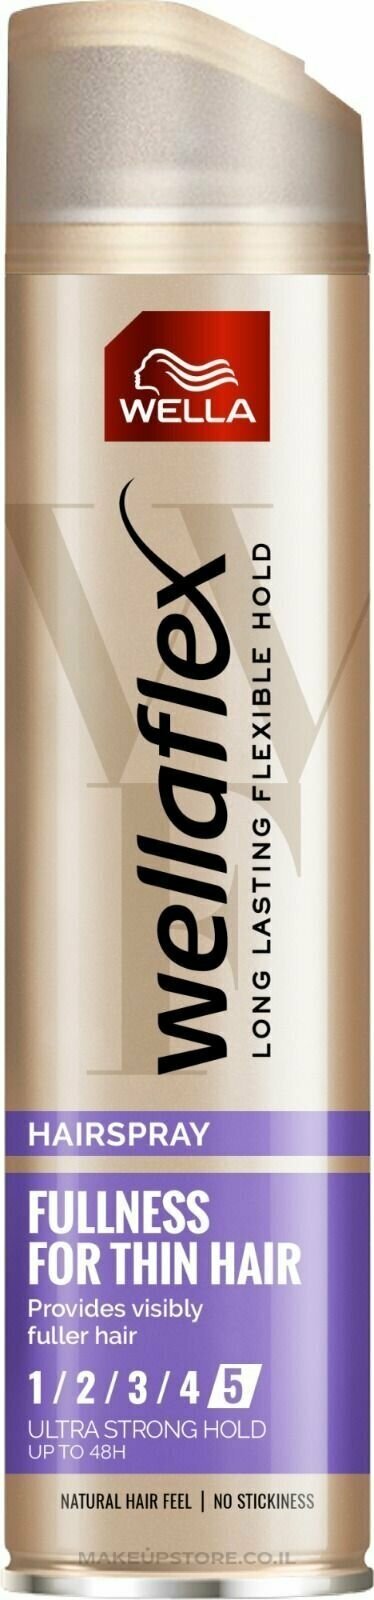 Лак для волос Wellaflex Fullness для тонких волос с маслом макадамии супер-сильной фиксации 250 мл (Из Финляндии)